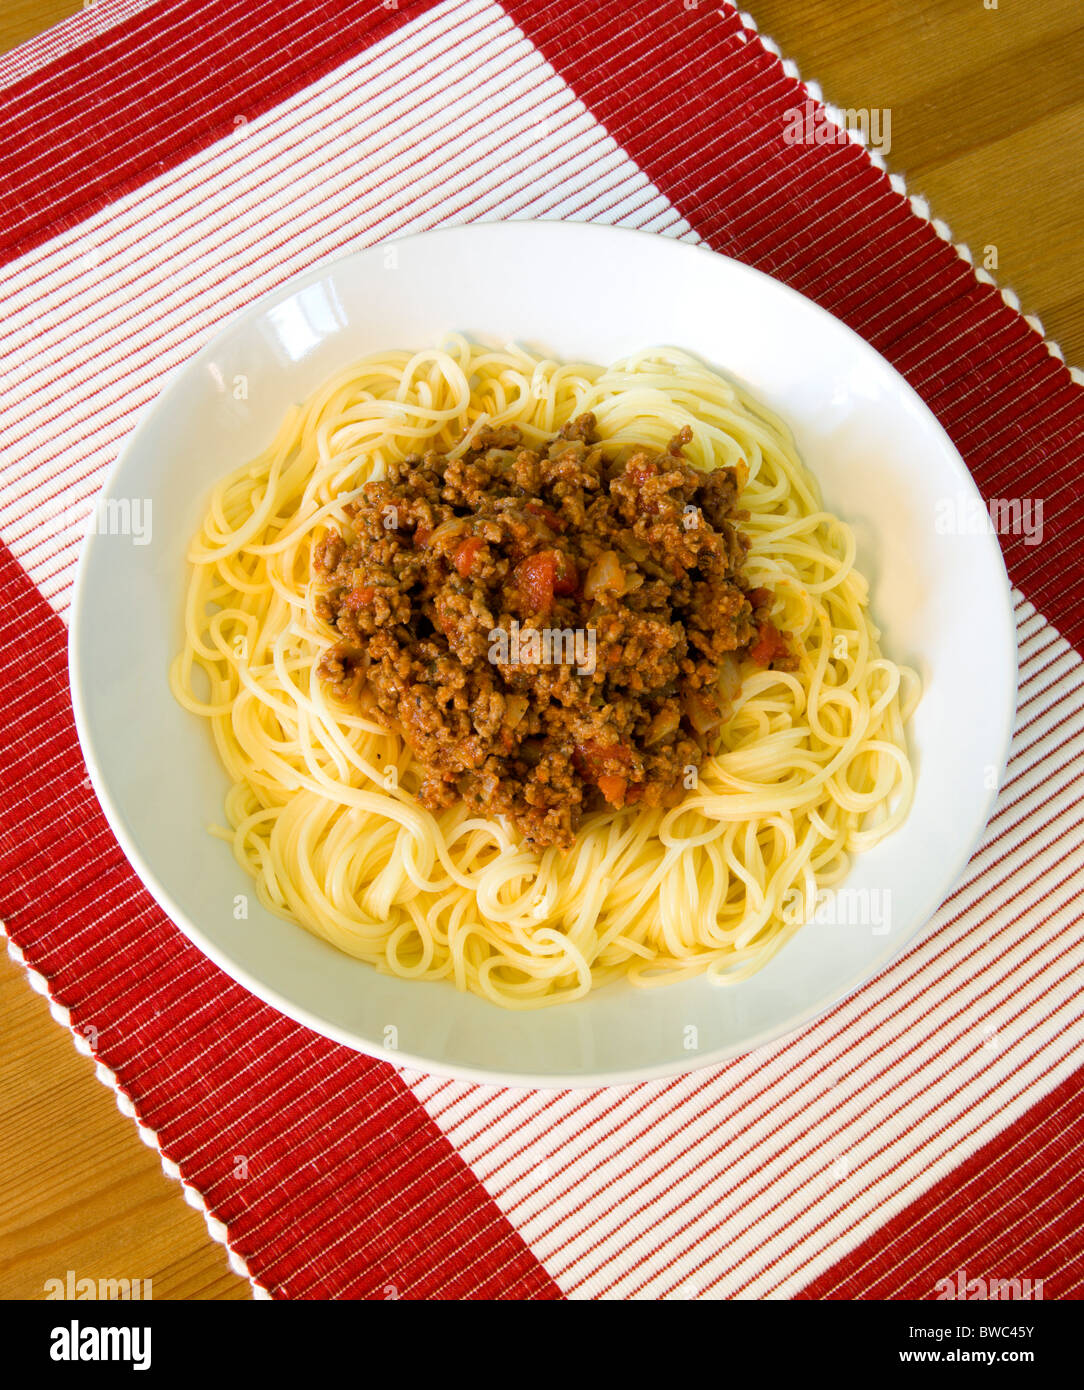 La nourriture, cuit, pâtes, spaghettis à la bolognaise dans un bol sur une table. Banque D'Images